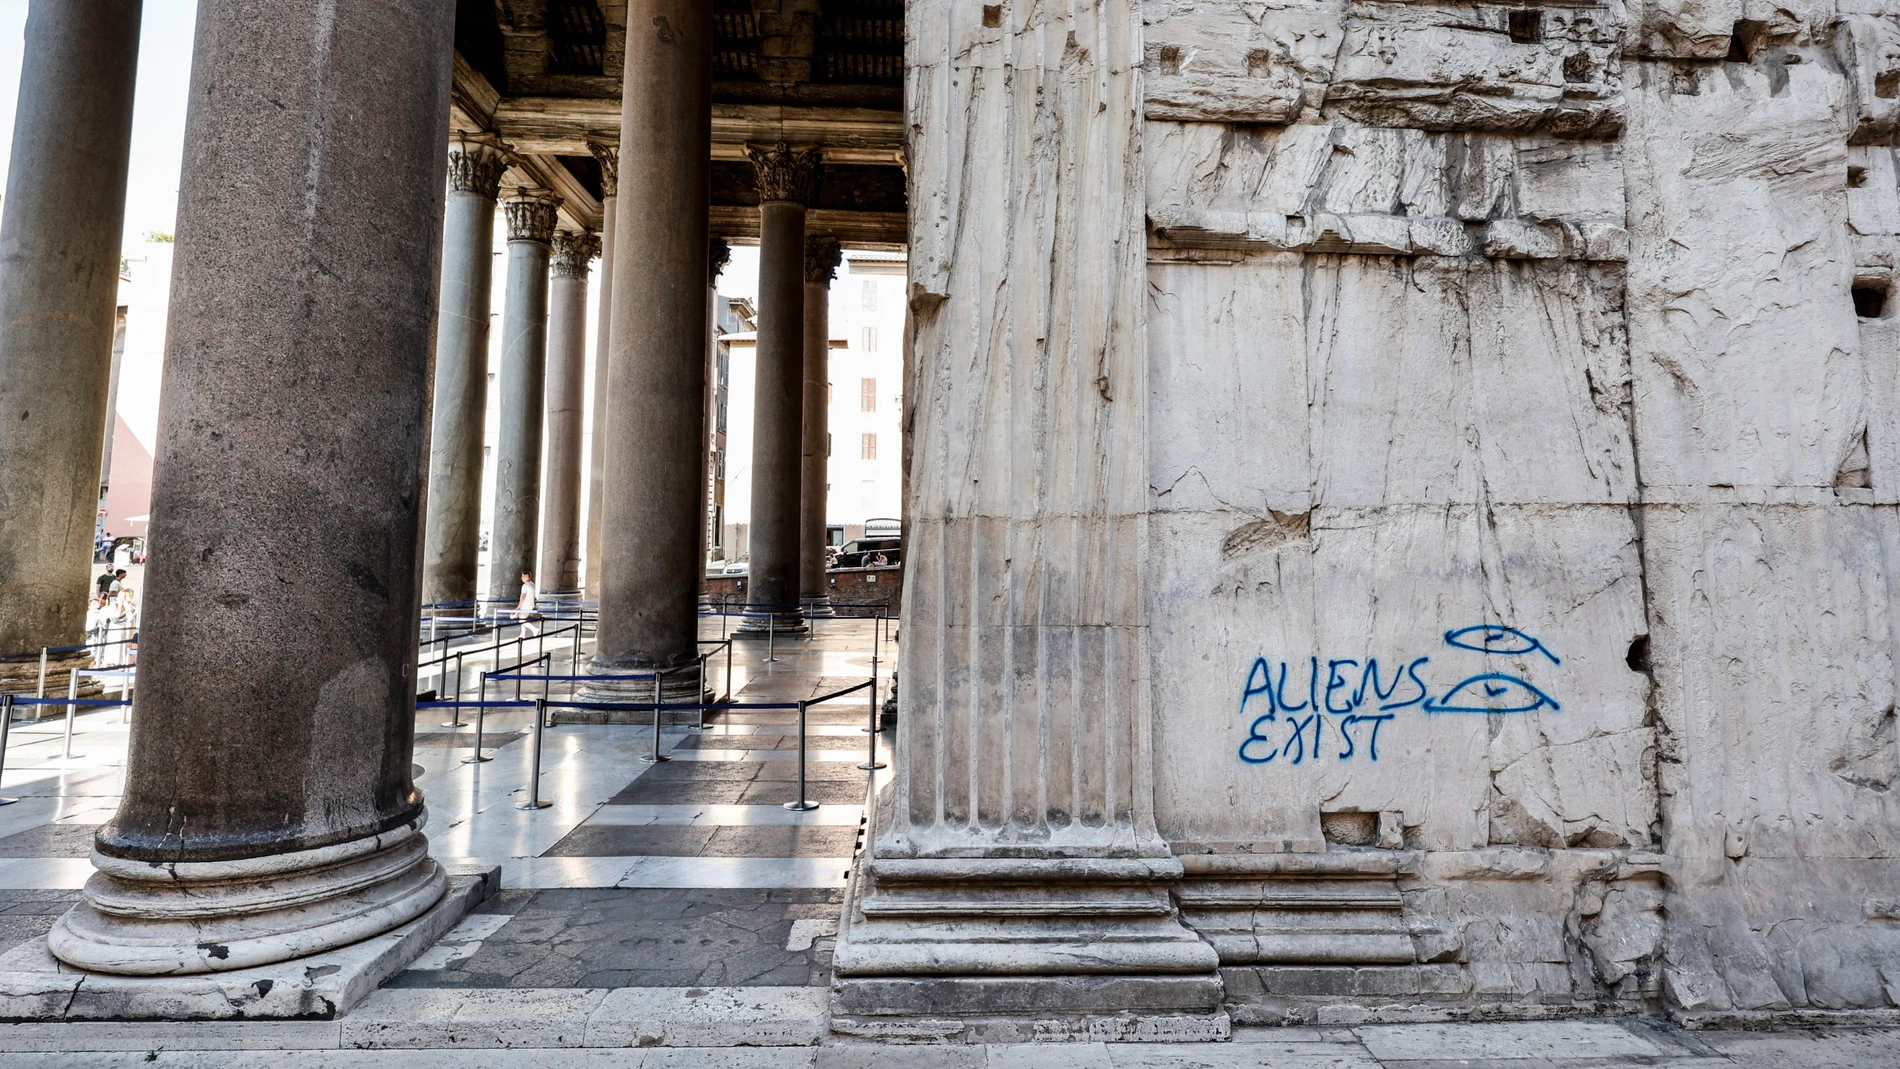 El Panteón de Roma amanece con una pintada en su muro: &quot;Los alienígenas existen&quot;